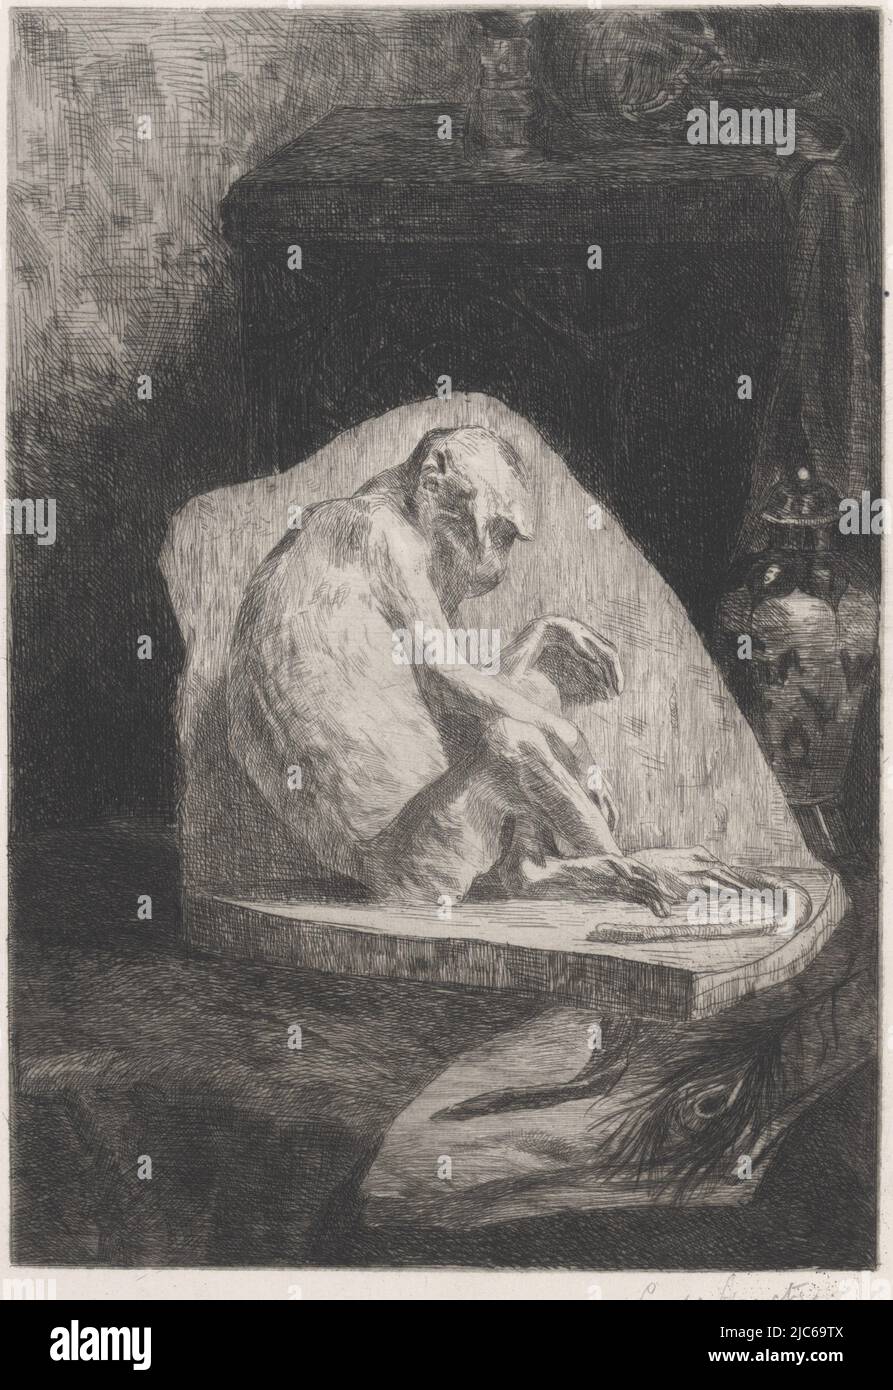 Eine Skulptur, die einen sitzenden Affen darstellt. Im Vordergrund eine Pfauenfeder. Rechts eine chinesische Vase, Skulptur eines sitzenden Affen, Druckerei: Louis Stracké, (vom Künstler signiert), 1866 - 1934, Papier, Radierung, H 298 mm × B 238 mm Stockfoto